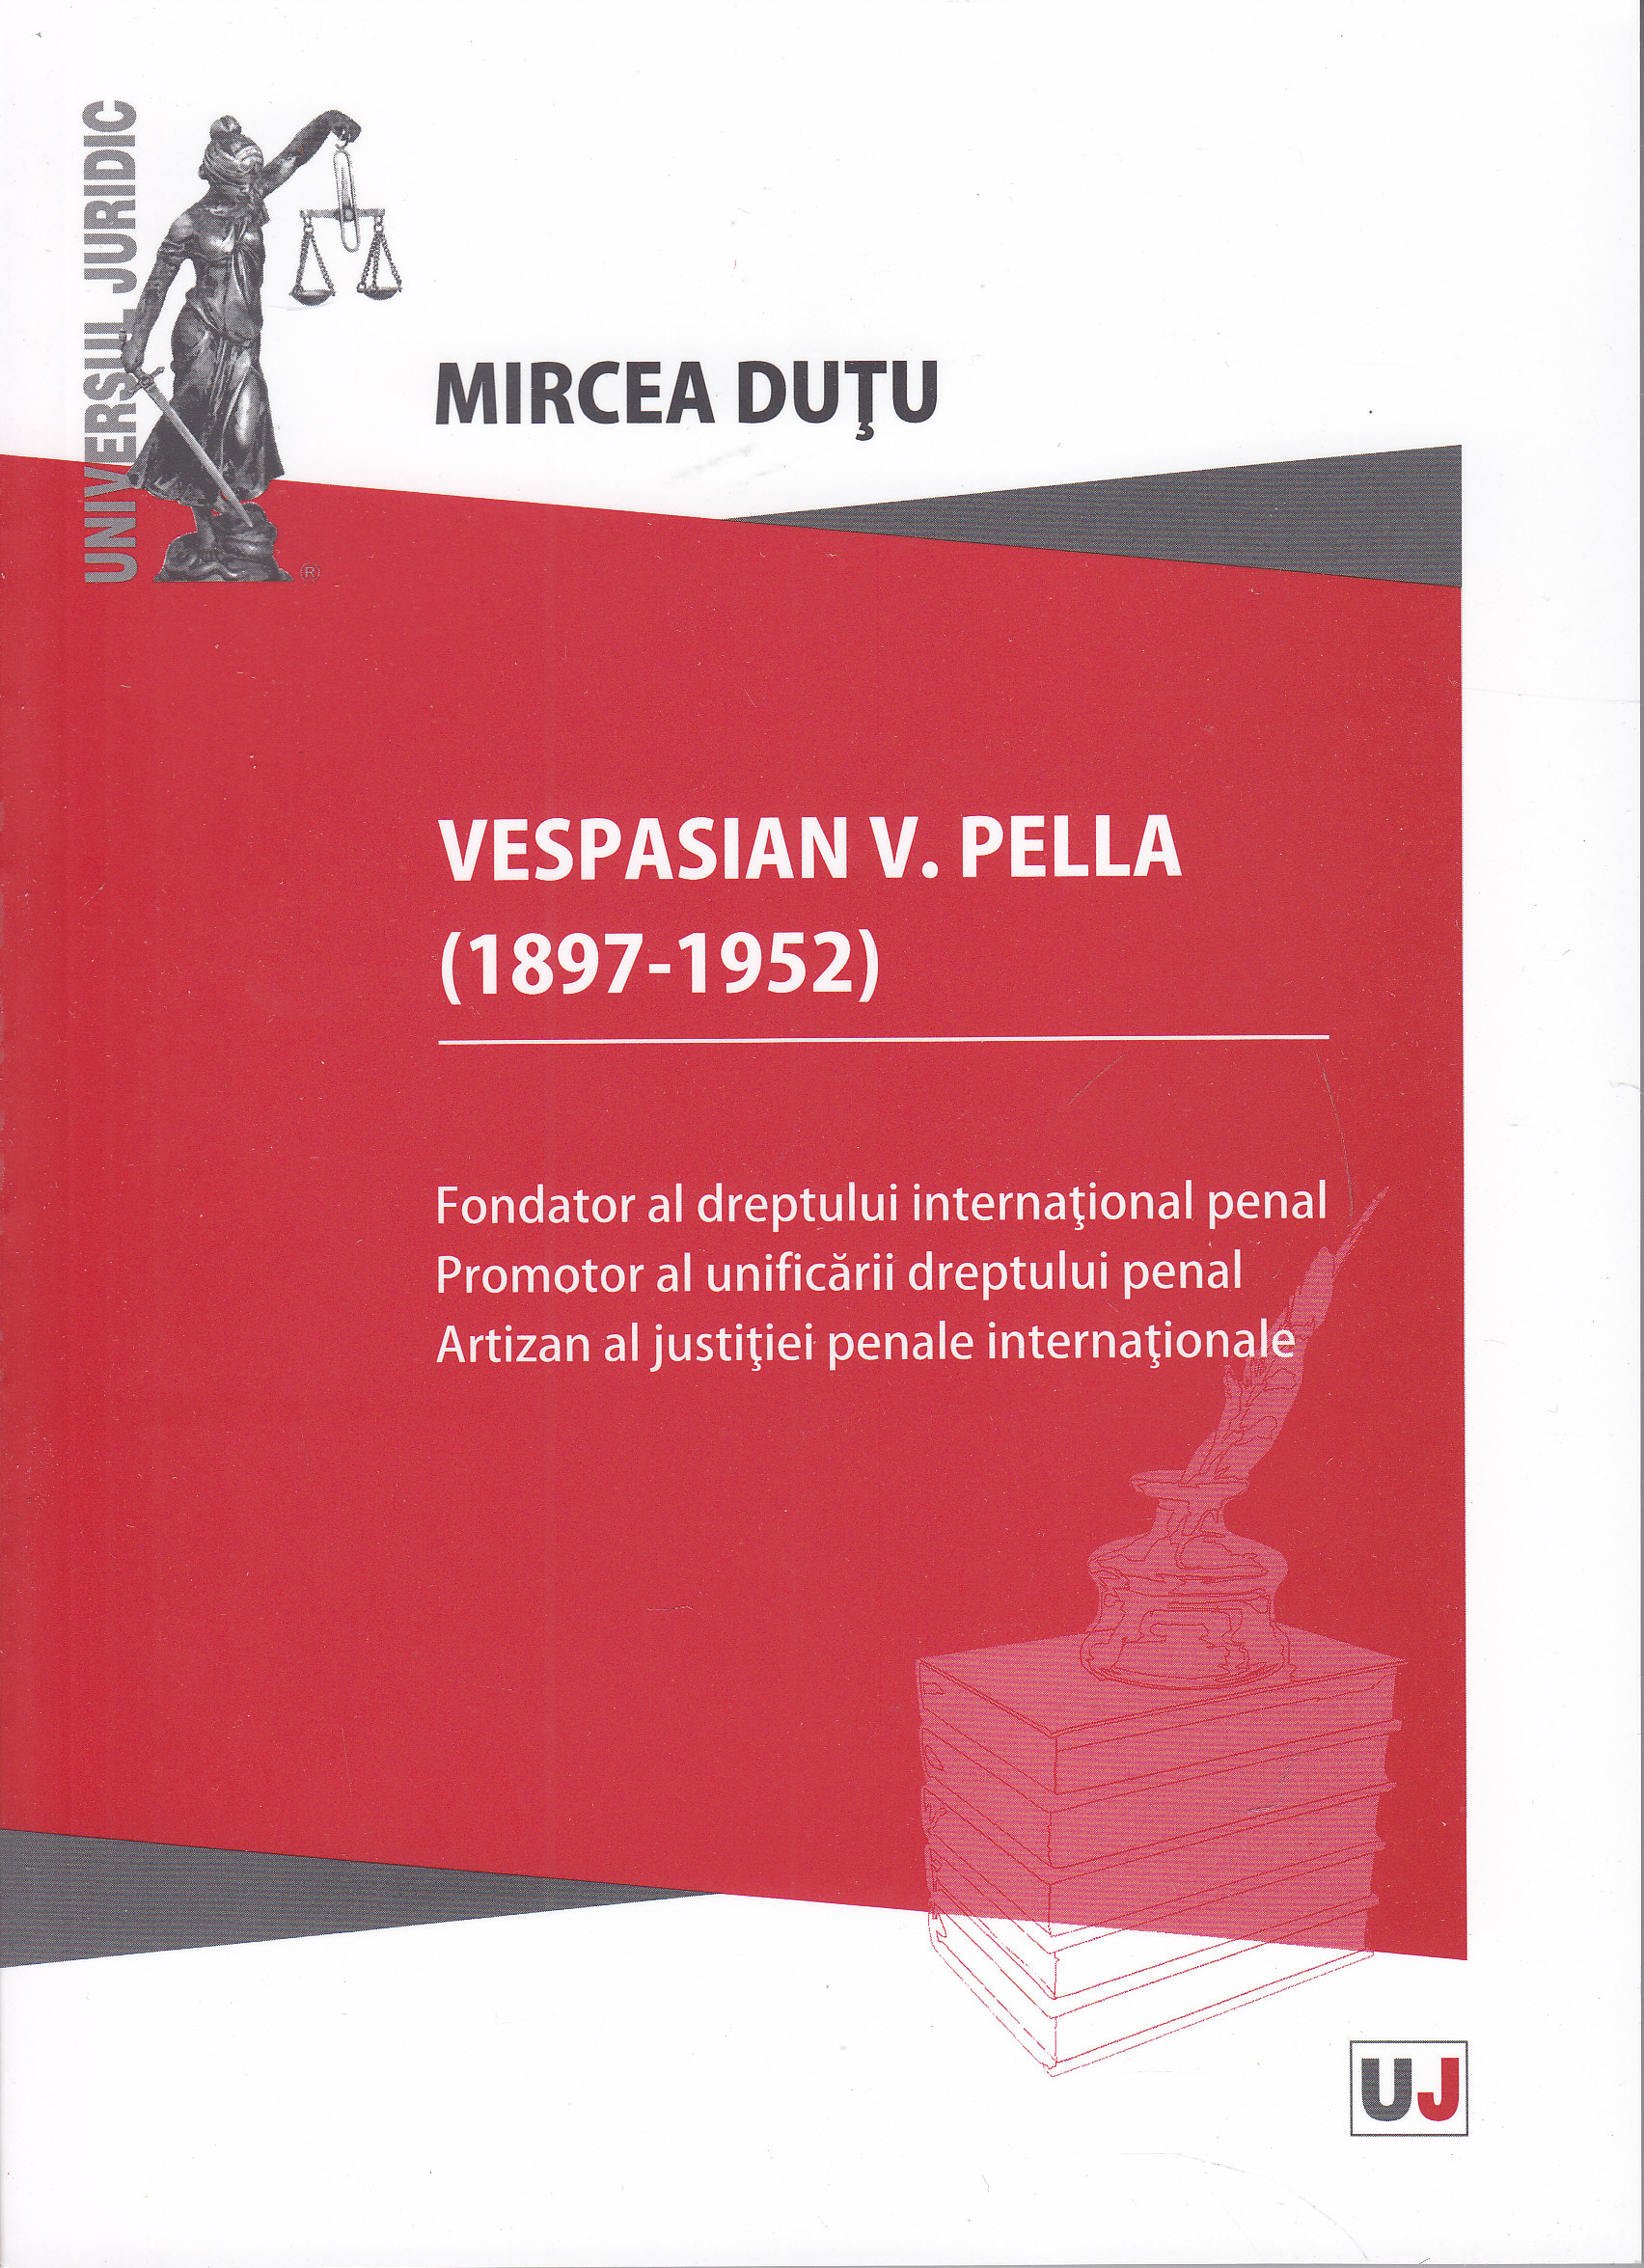 Vespasian V. Pella 91897-1952) - Mircea Dutu